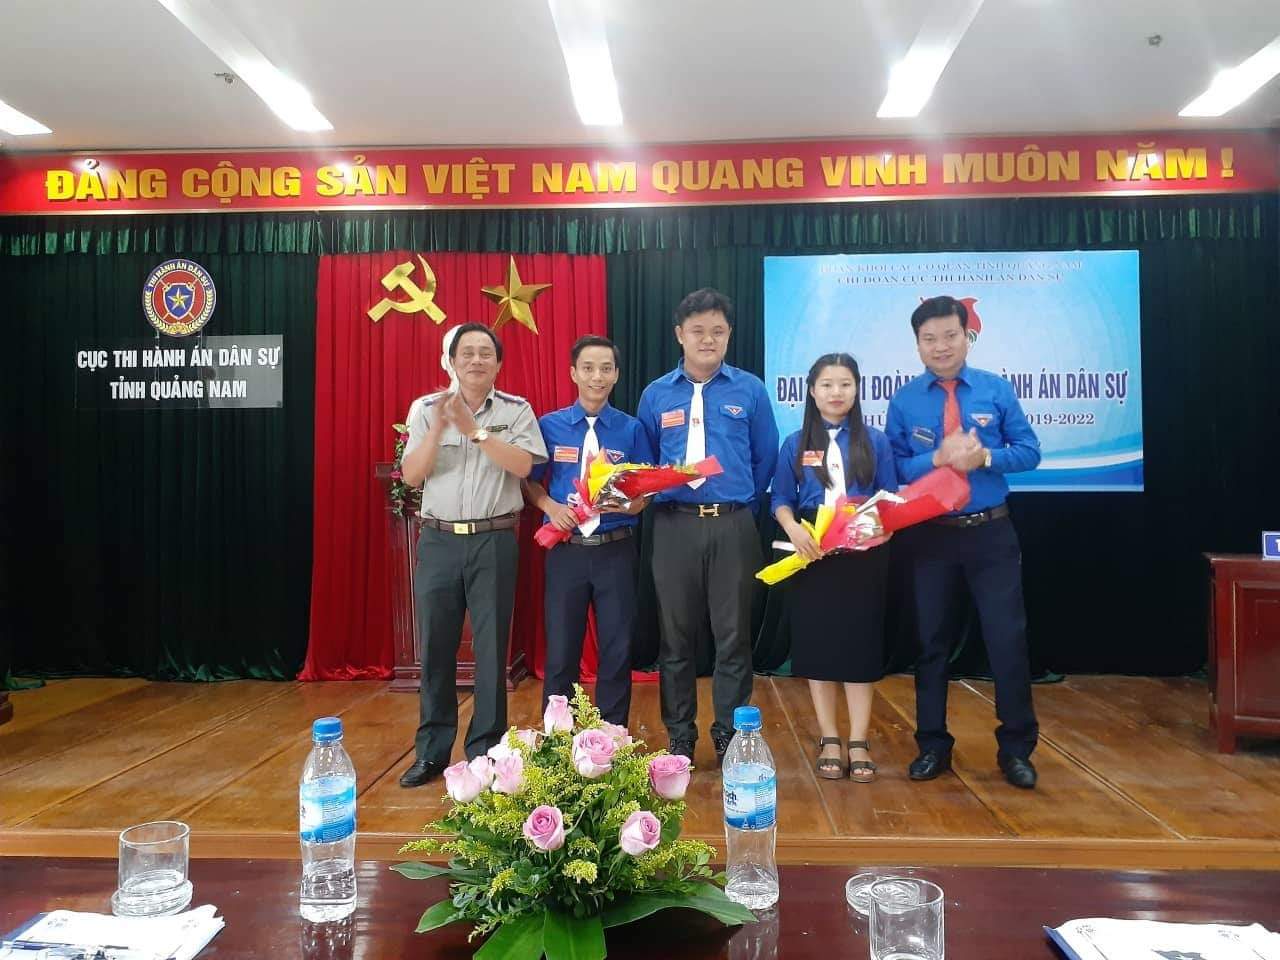 Đại hội Chi đoàn Cục Thi hành án dân sự tỉnh Quảng Nam lần thứ IV, nhiệm kỳ 2019-2022